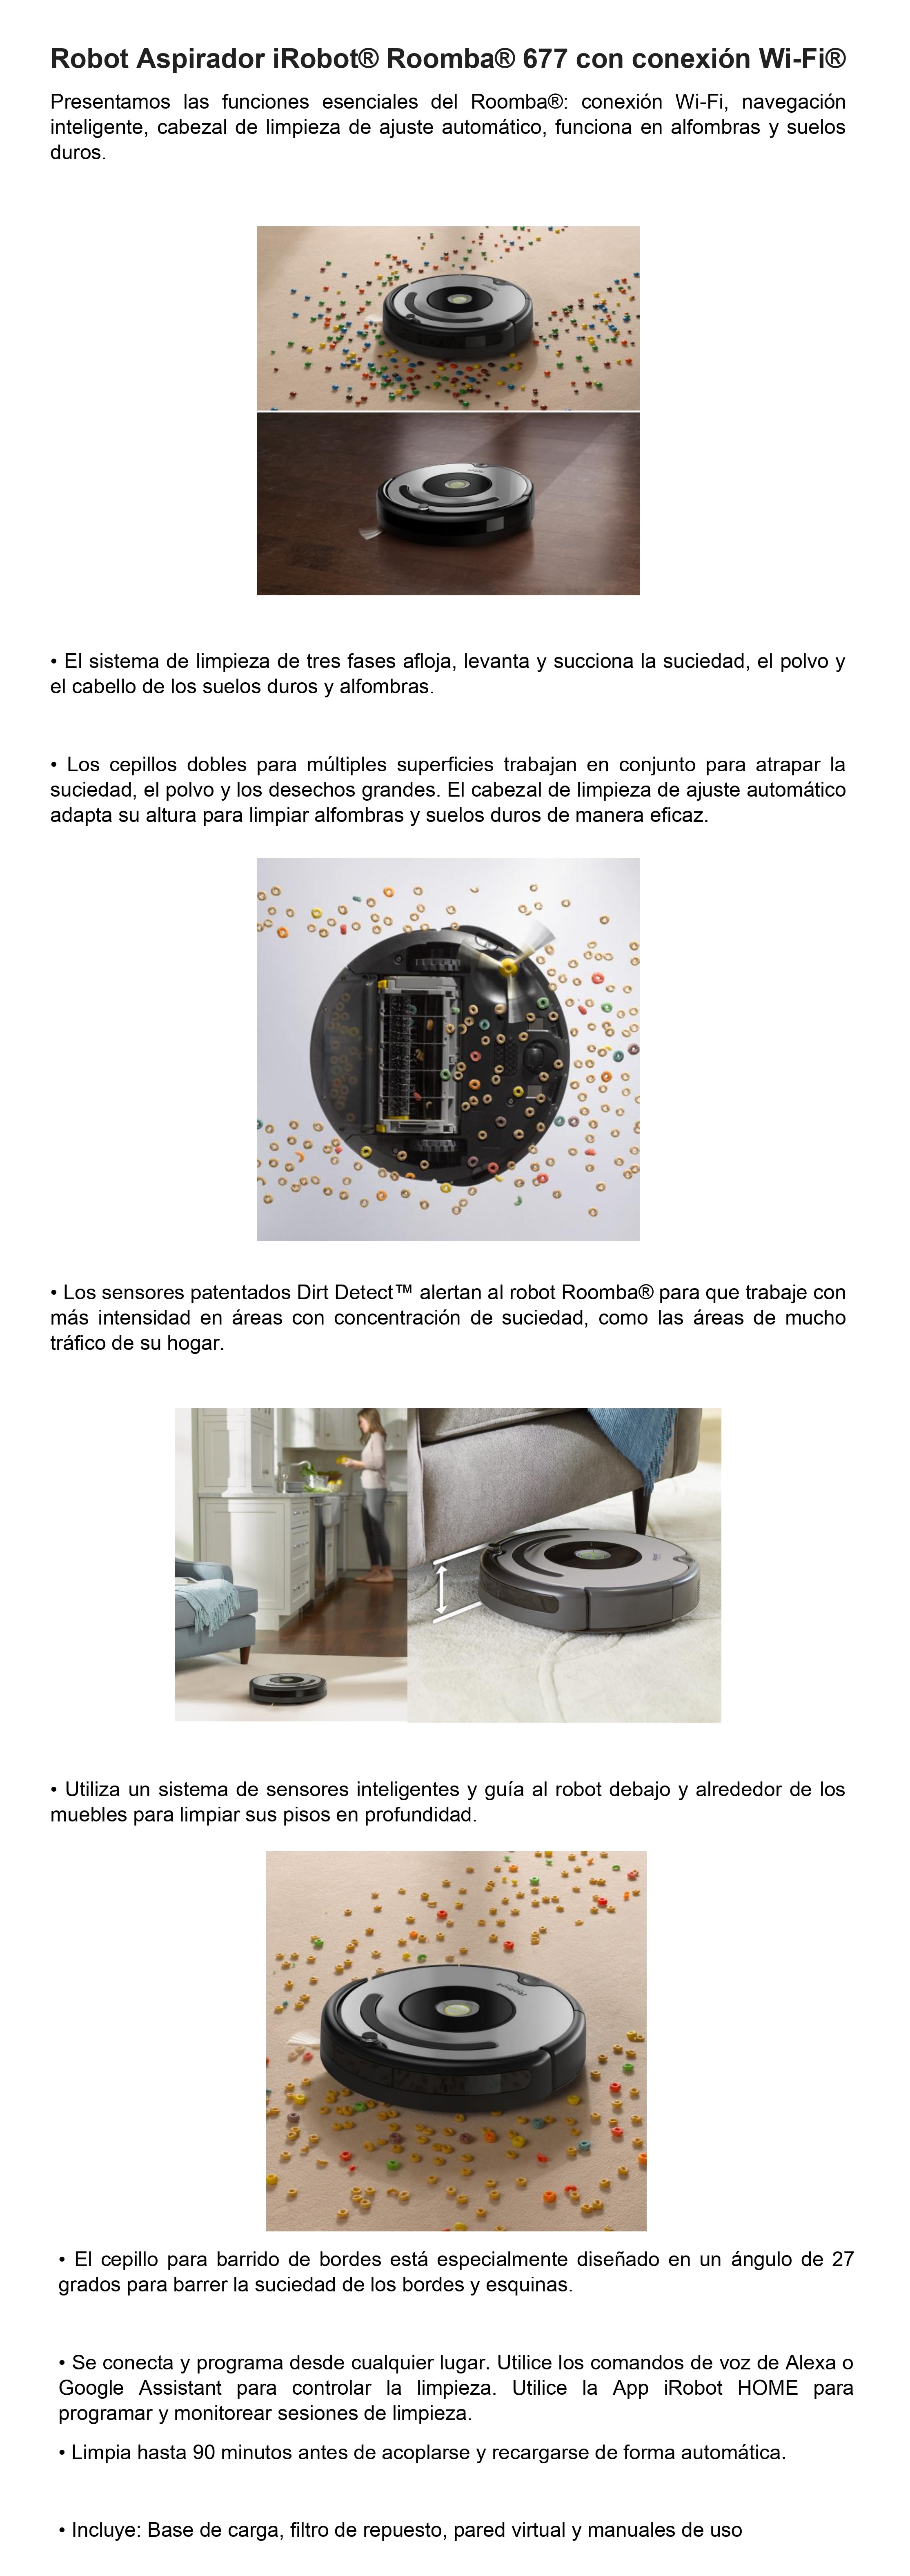 Como funciona el Robot aspirador Roomba 